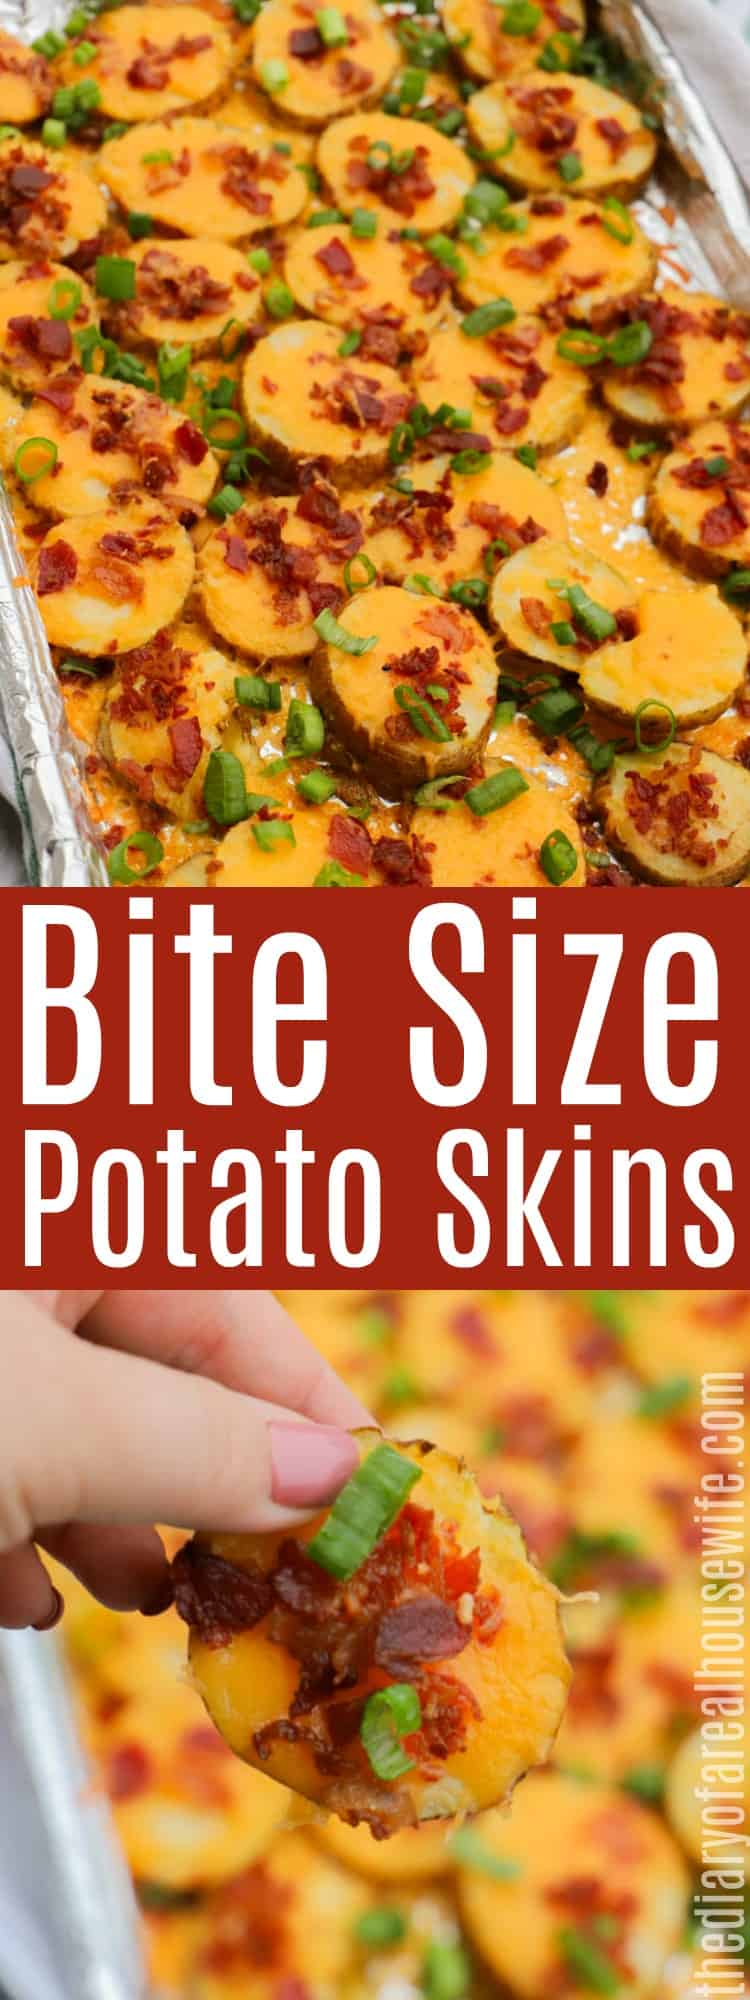 Bite Size Potato Skins